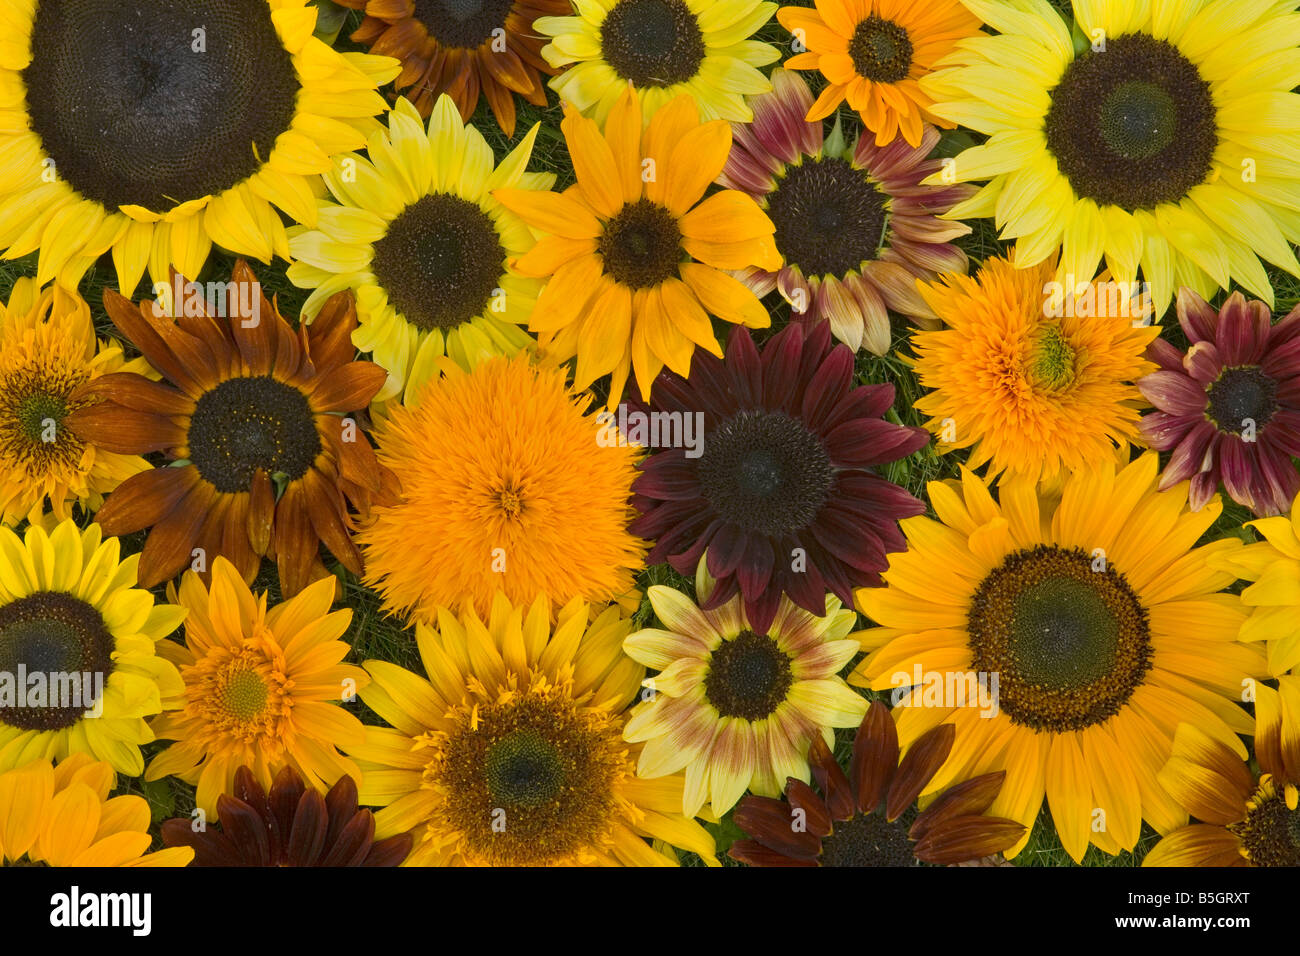 Agricoltura, girasole, brillante, di colore giallo, arancio, collage, felice, Oregon, ritagliare, girasoli, fiori, Stati Uniti, fiori Foto Stock